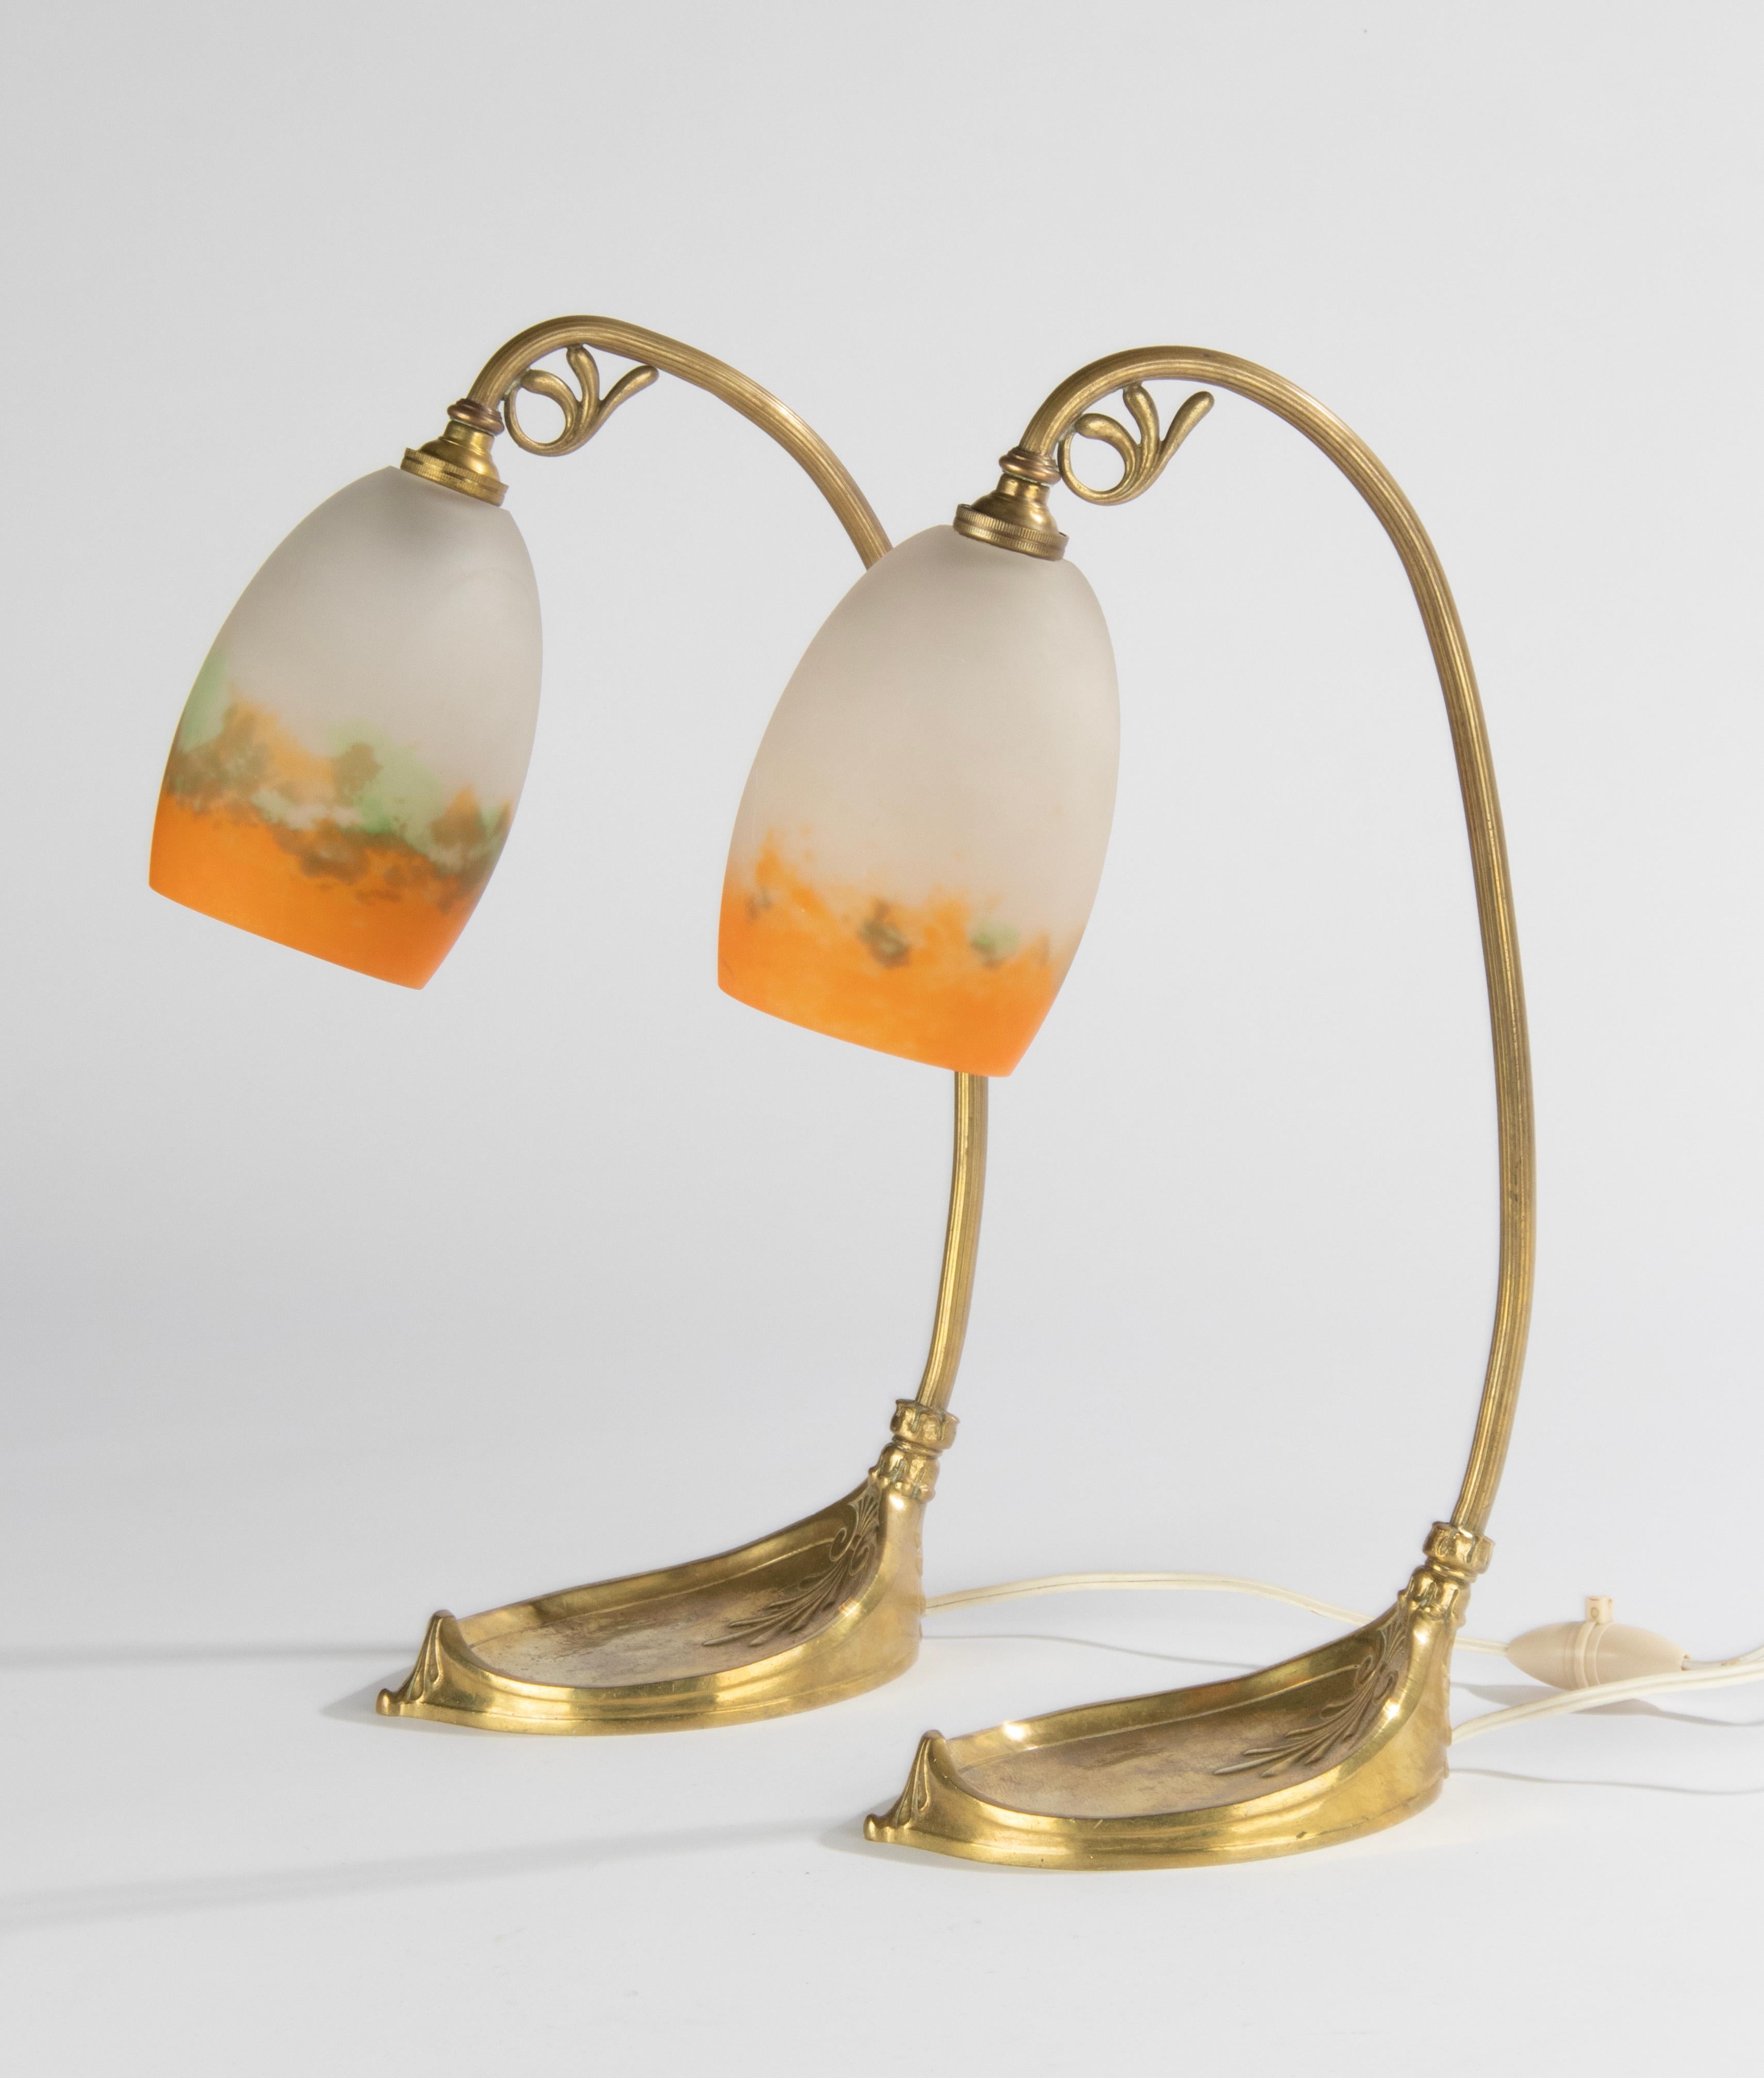 Paire de lampes de table Muller de la période Art Nouveau française. La base est en bronze/laiton doré. Les lampes ont des abat-jours en pate de verre, fabriqués et signés par Muller Frères en France. Le verre présente de très belles couleurs vertes